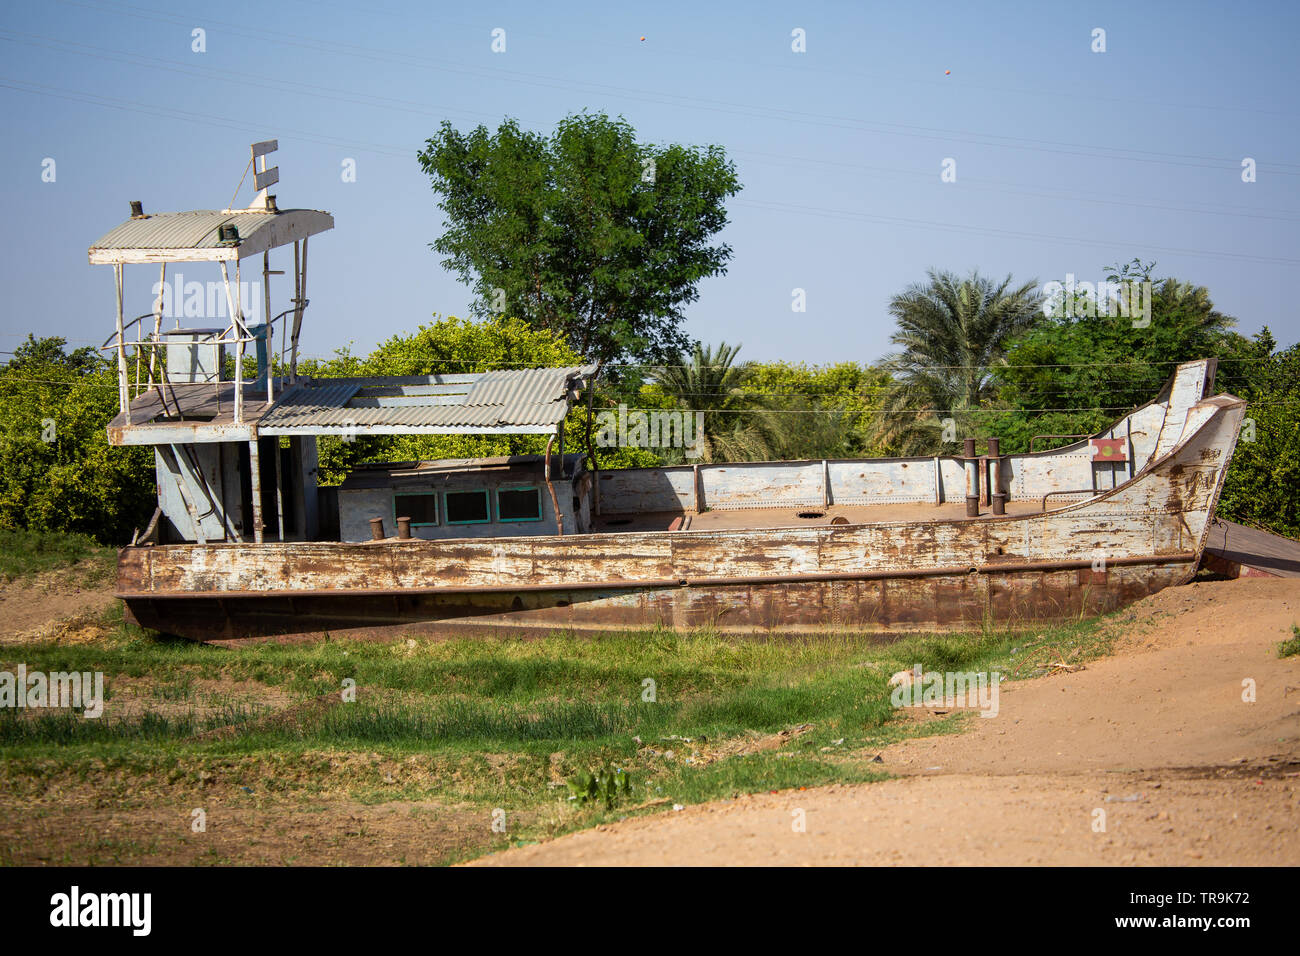 Un bateau de croisière nil est laissé à l'abandon dans un domaine sur les rives de la rivière à Dongola la capitale de l'état du nord du Soudan Banque D'Images